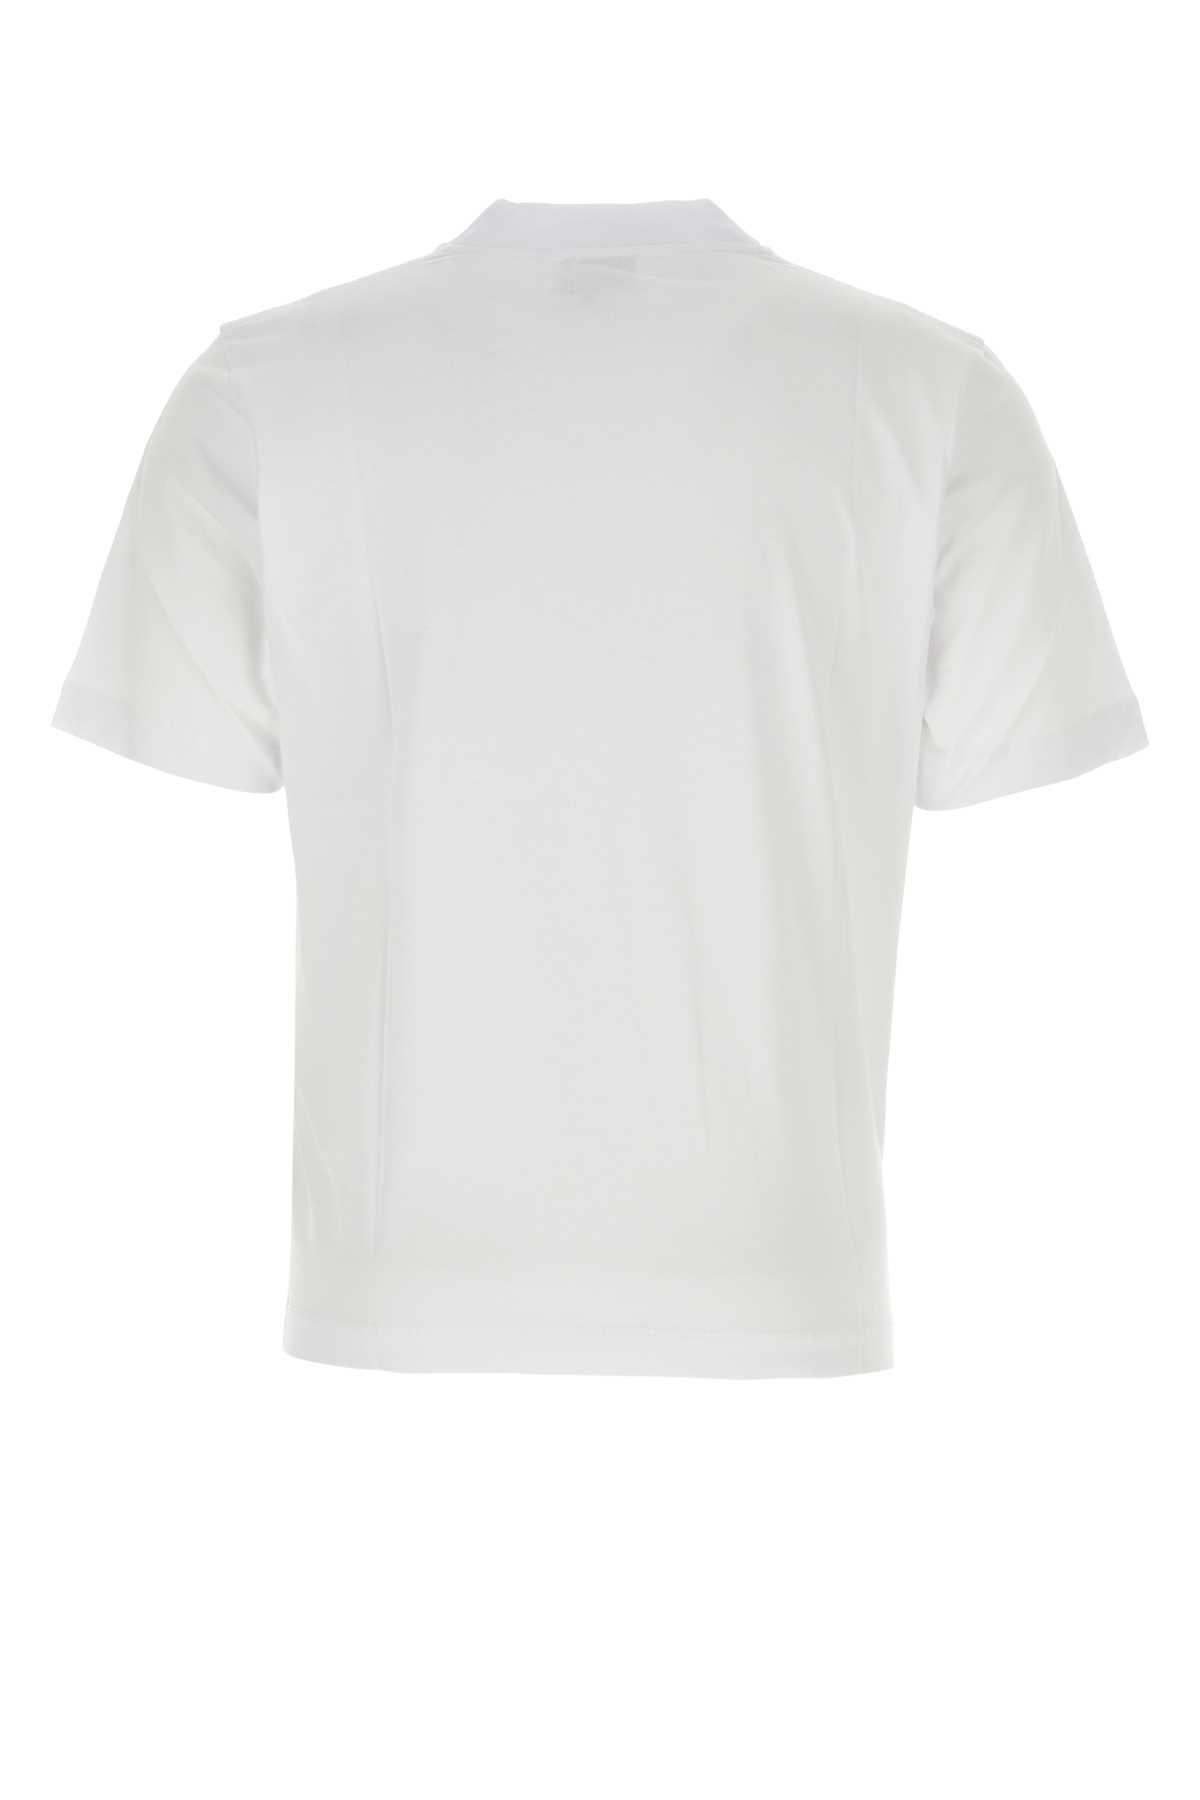 Shop Etudes Studio White Cotton T-shirt